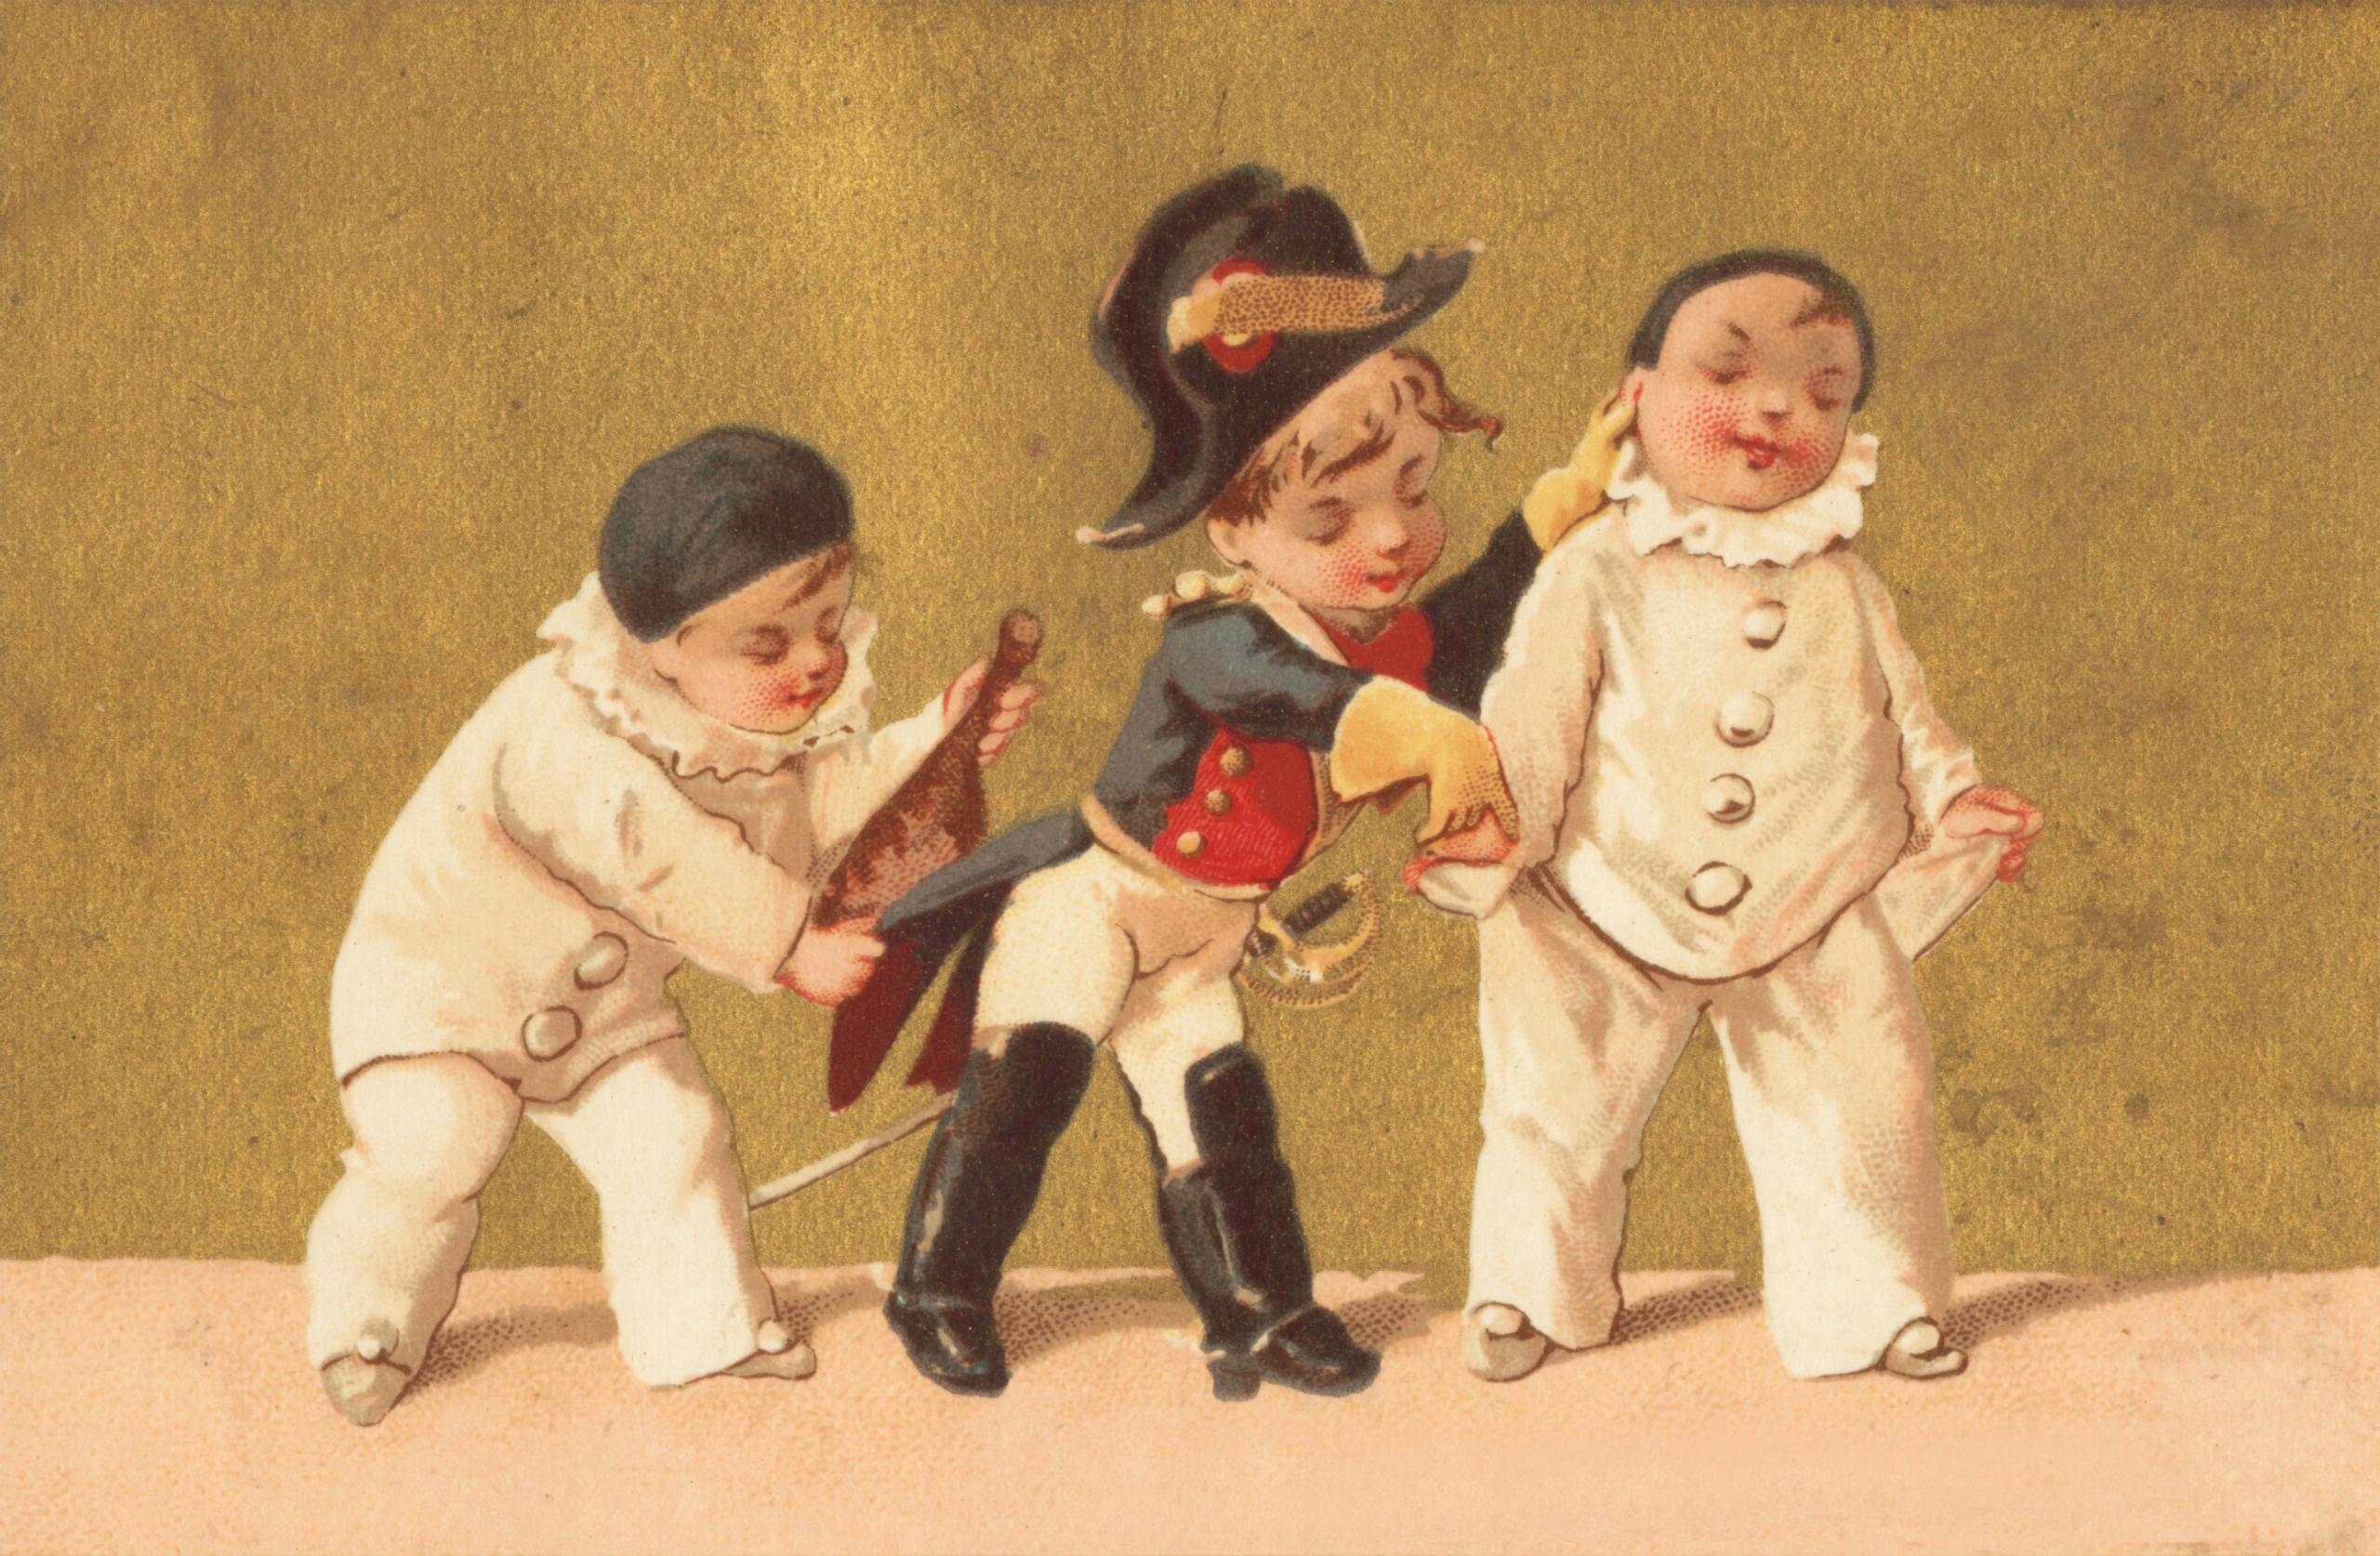 ナポレオンの衣装を着た幼児と他幼児が2人